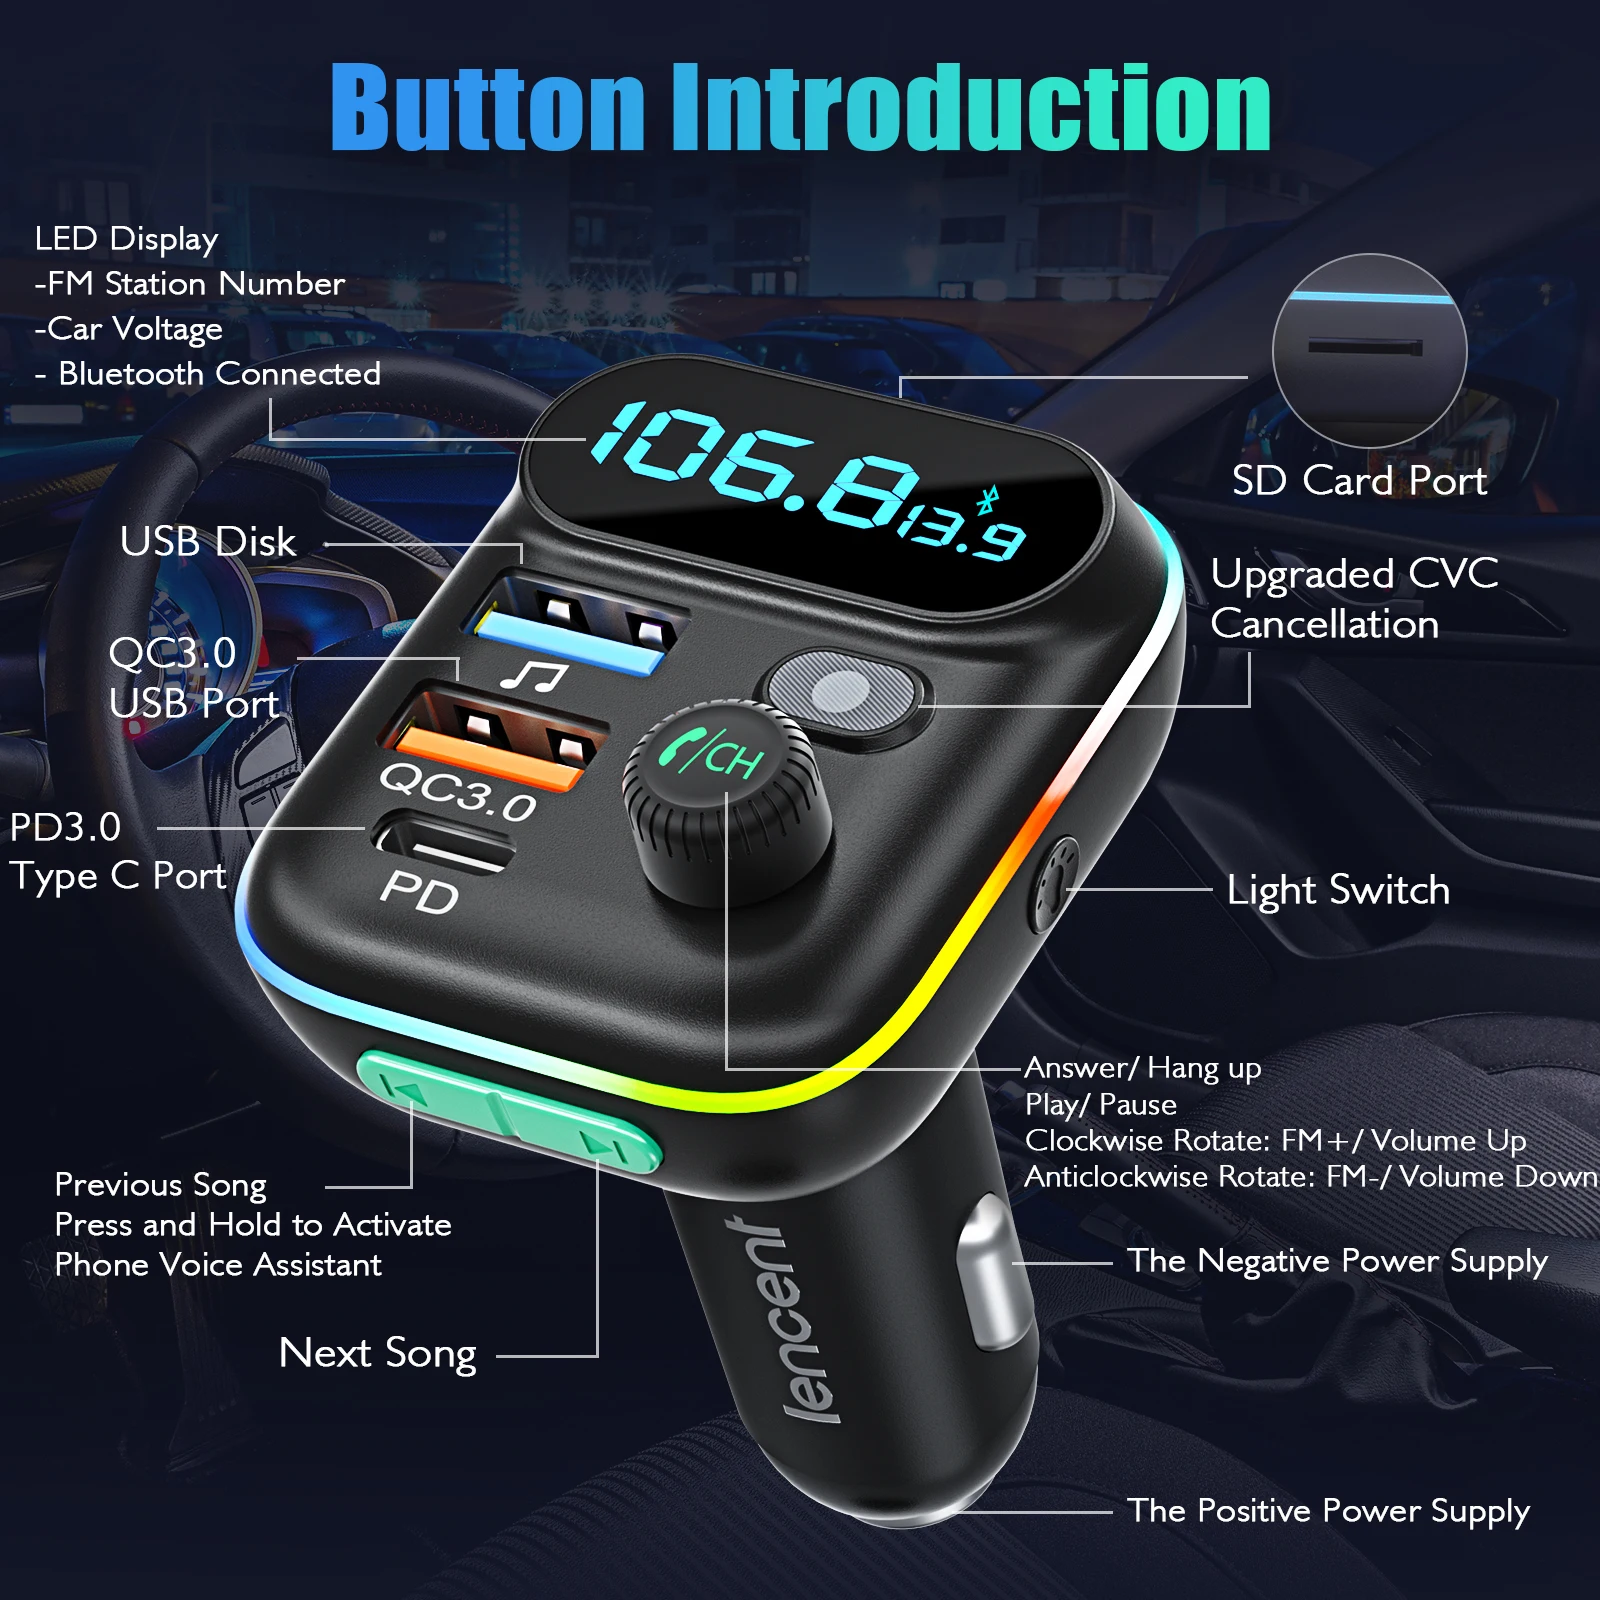 Auto Bluetooth-kompatibel 5,0 FM Transmitter QC 3,0 PD20W Dual USB Schnelle  Ladegerät Auto MP3 Player Große Mikrofon Auto elektronik - AliExpress